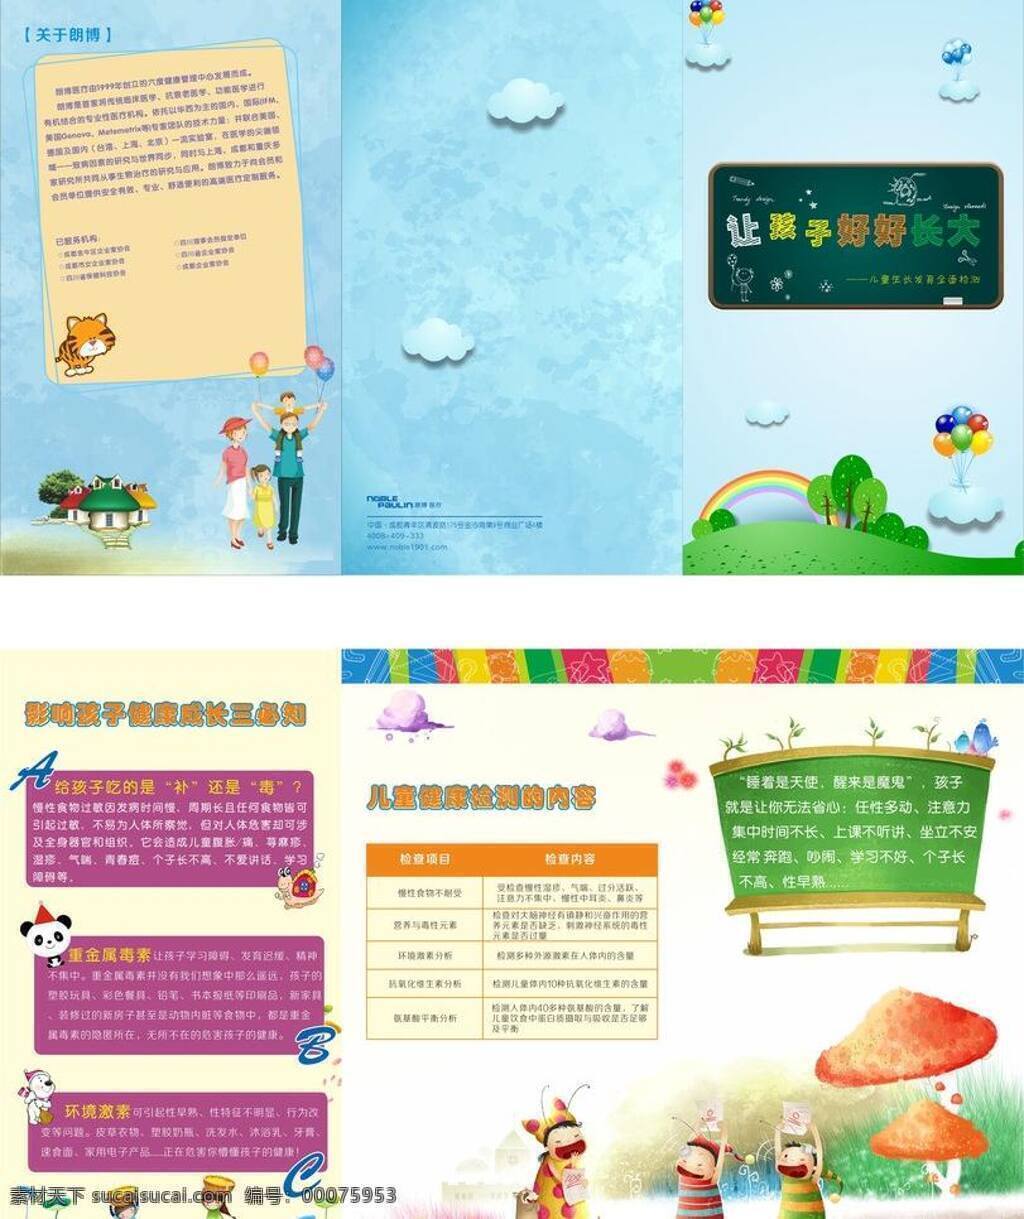 儿童健康 画册 插画 成长 儿童 健康 生活百科 医疗保健 折页 儿童健康画册 矢量 海报 其他海报设计